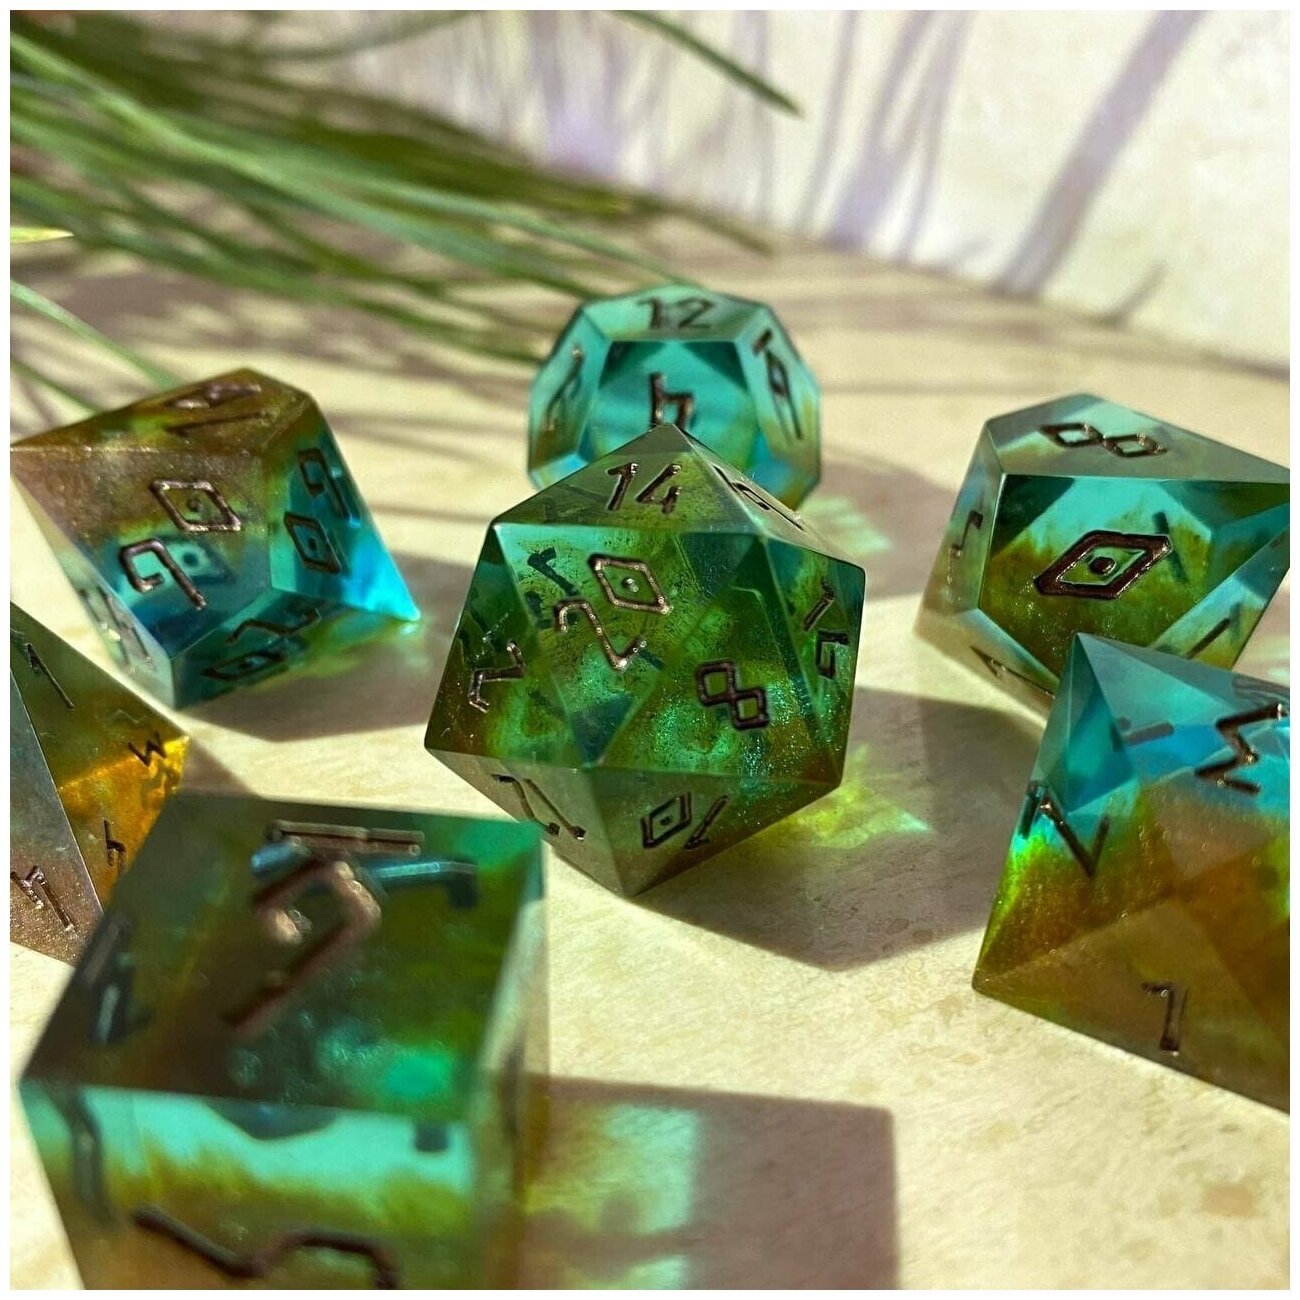 Дайсы ручной работы (игральные кости, кубики) для DnD, ДнД, Dungeons and Dragons, Pathfinder RPG (набор 7шт) Rusty Emerald